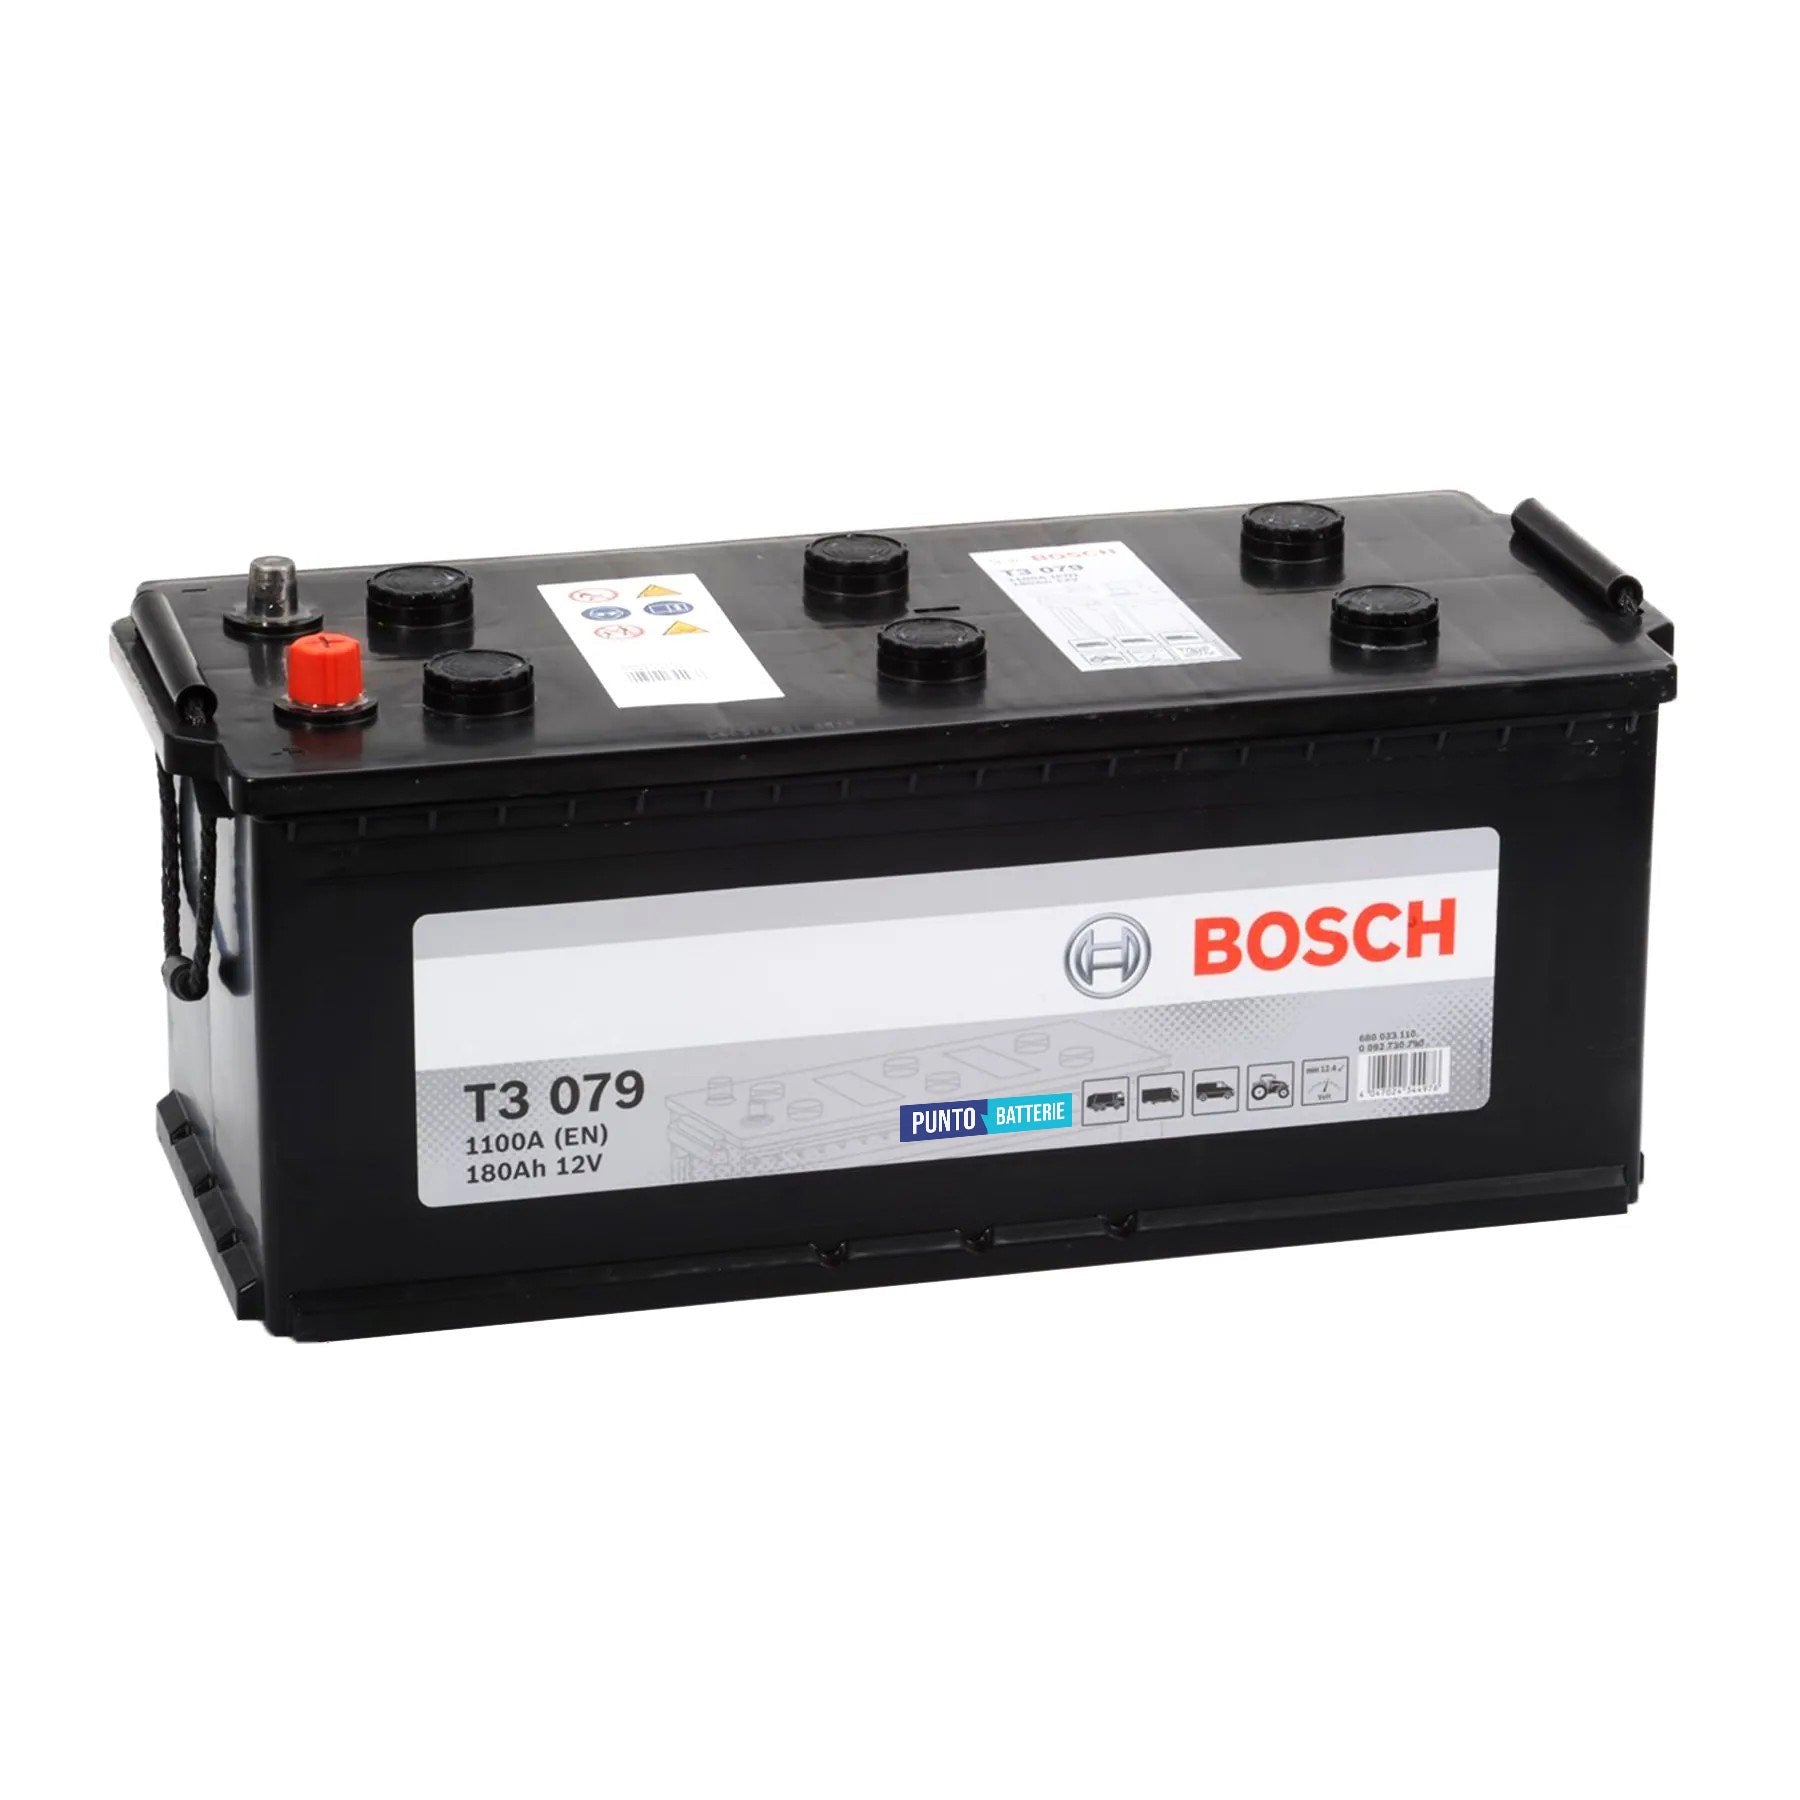 Batteria originale Bosch T3 T3079, dimensioni 513 x 223 x 223, polo positivo a destra, 12 volt, 180 amperora, 1100 ampere. Batteria per camion e veicoli pesanti.